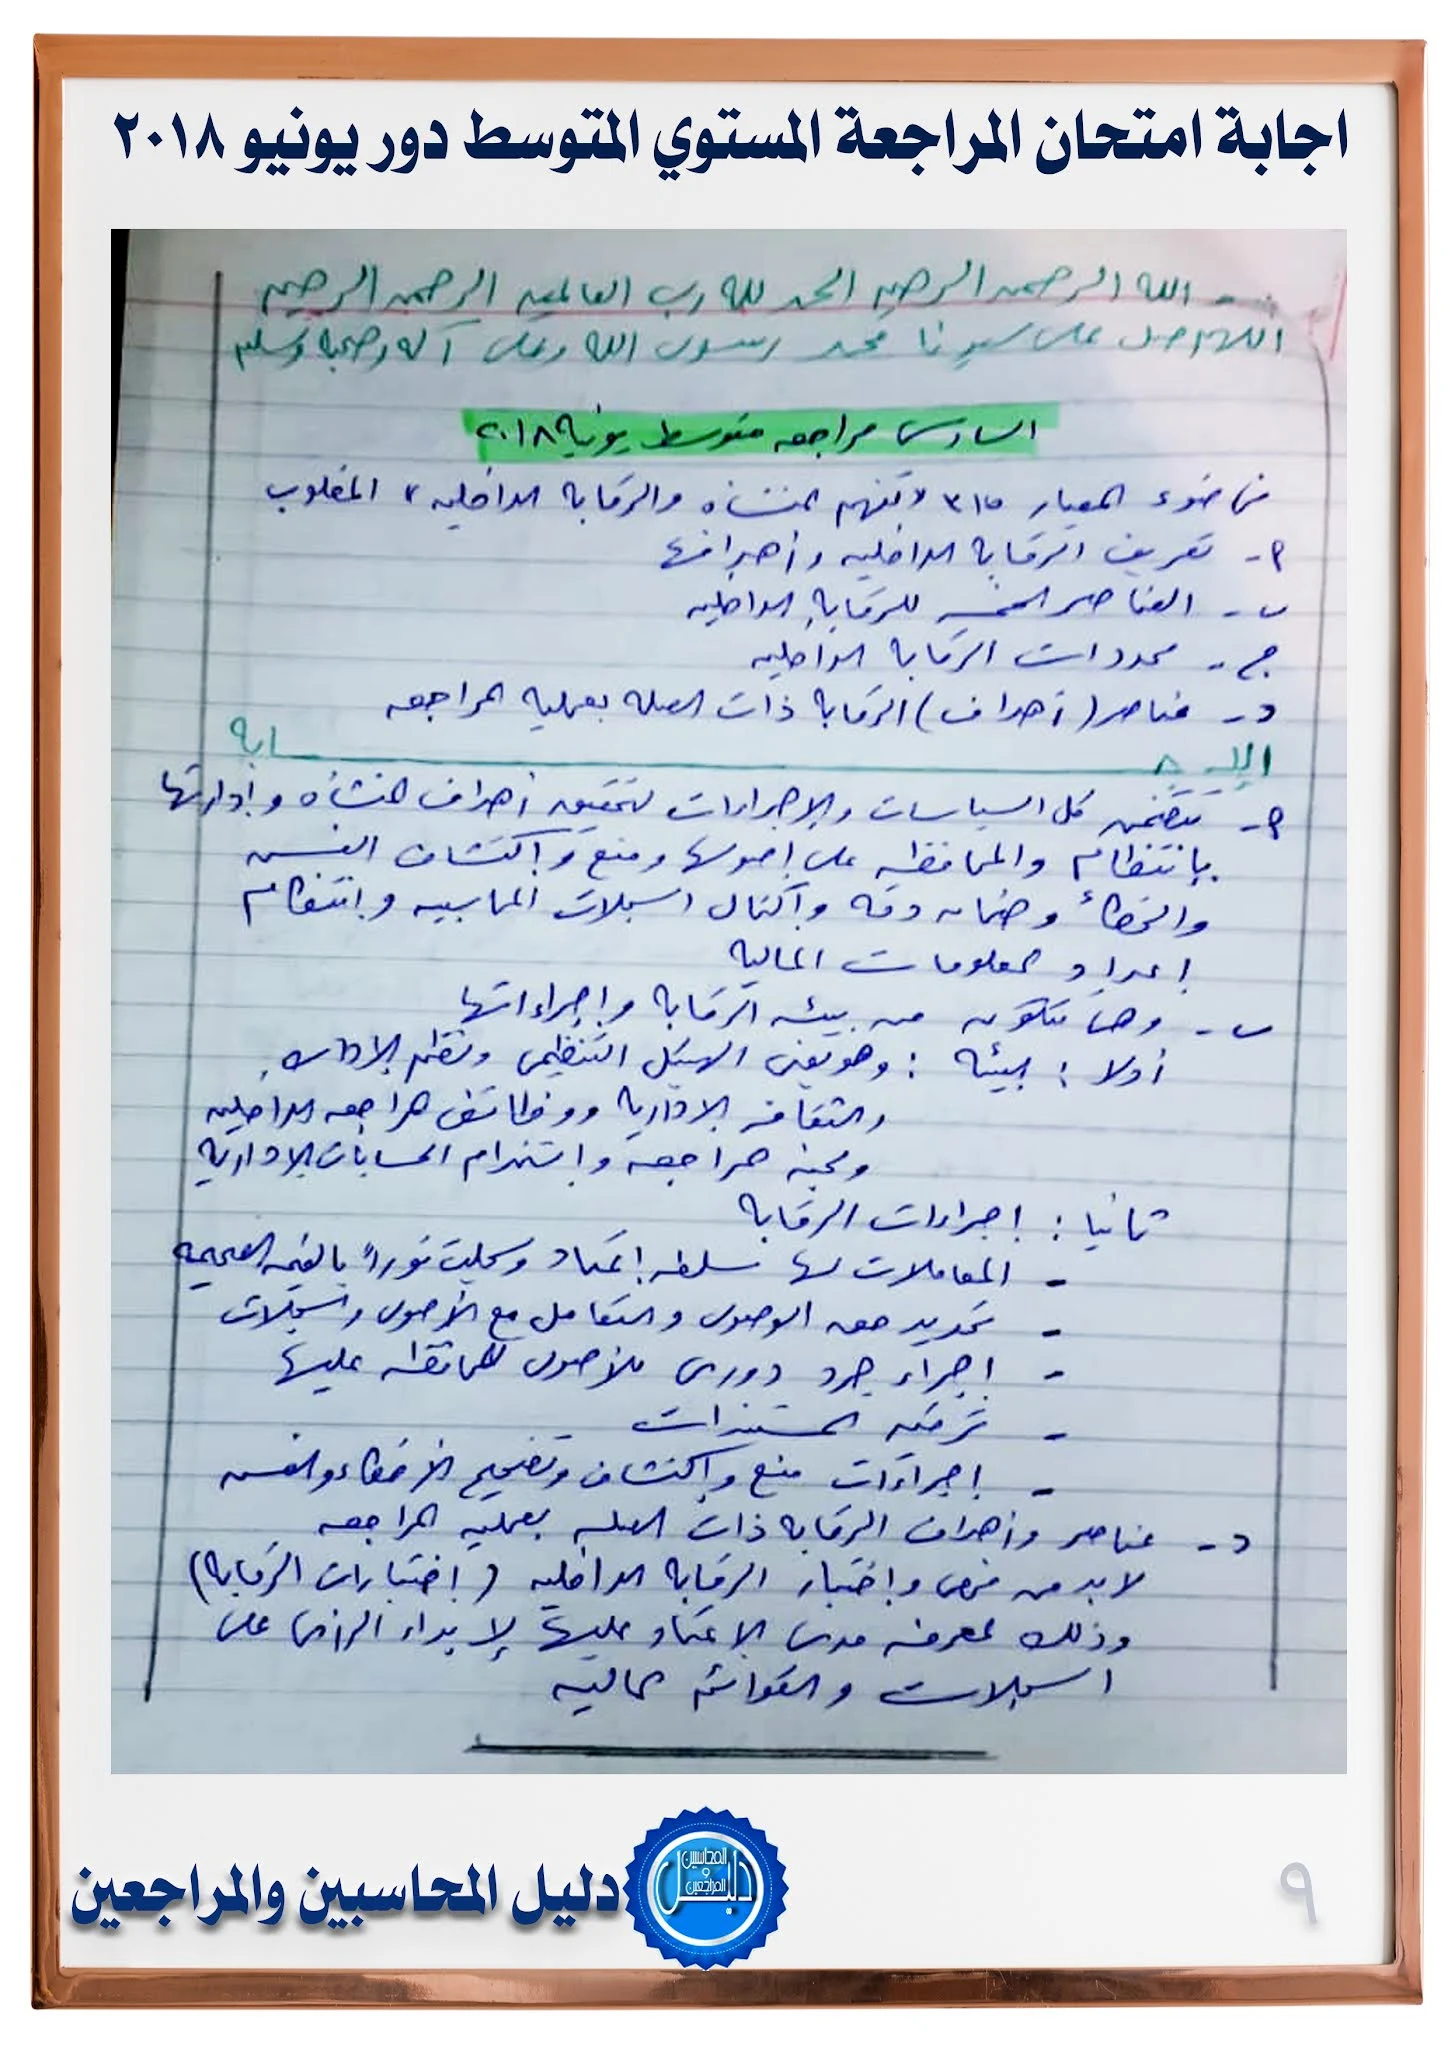 اجابة امتحان المراجعة للمستوي المتوسط  يونيو 2018 جمعية المحاسبين والمراجعين المصرية